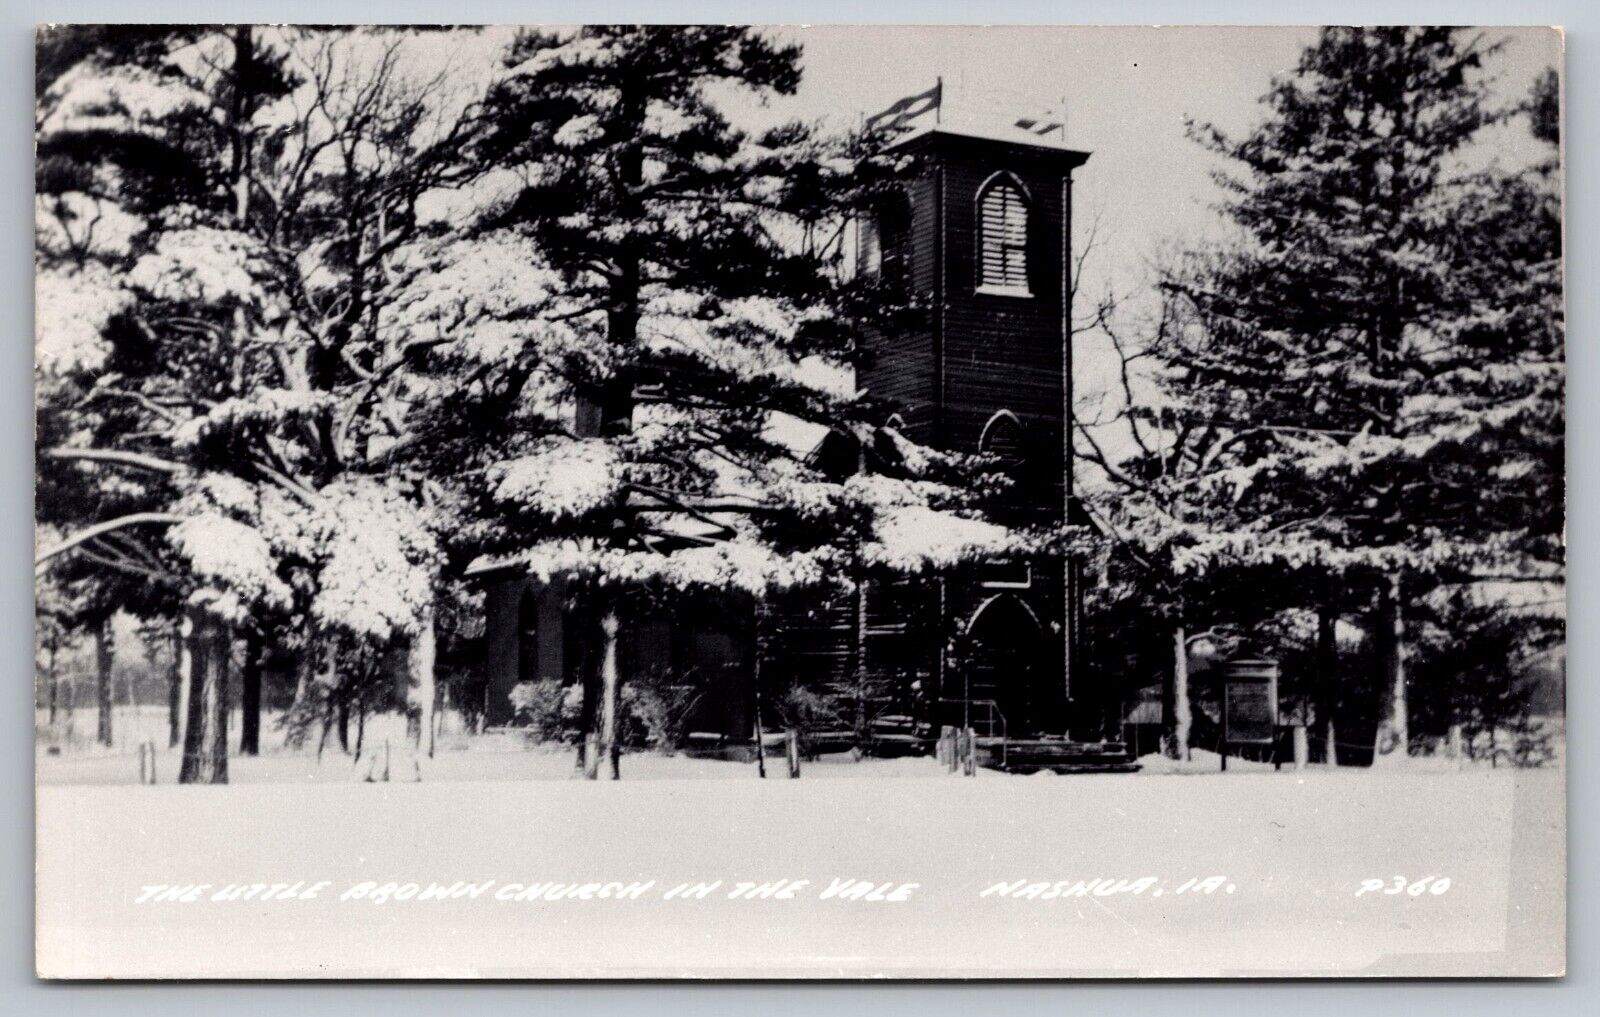 The Little Brown Church in the Vale Nashua Iowa-Rare Snow View-Vtg RPPC Postcard